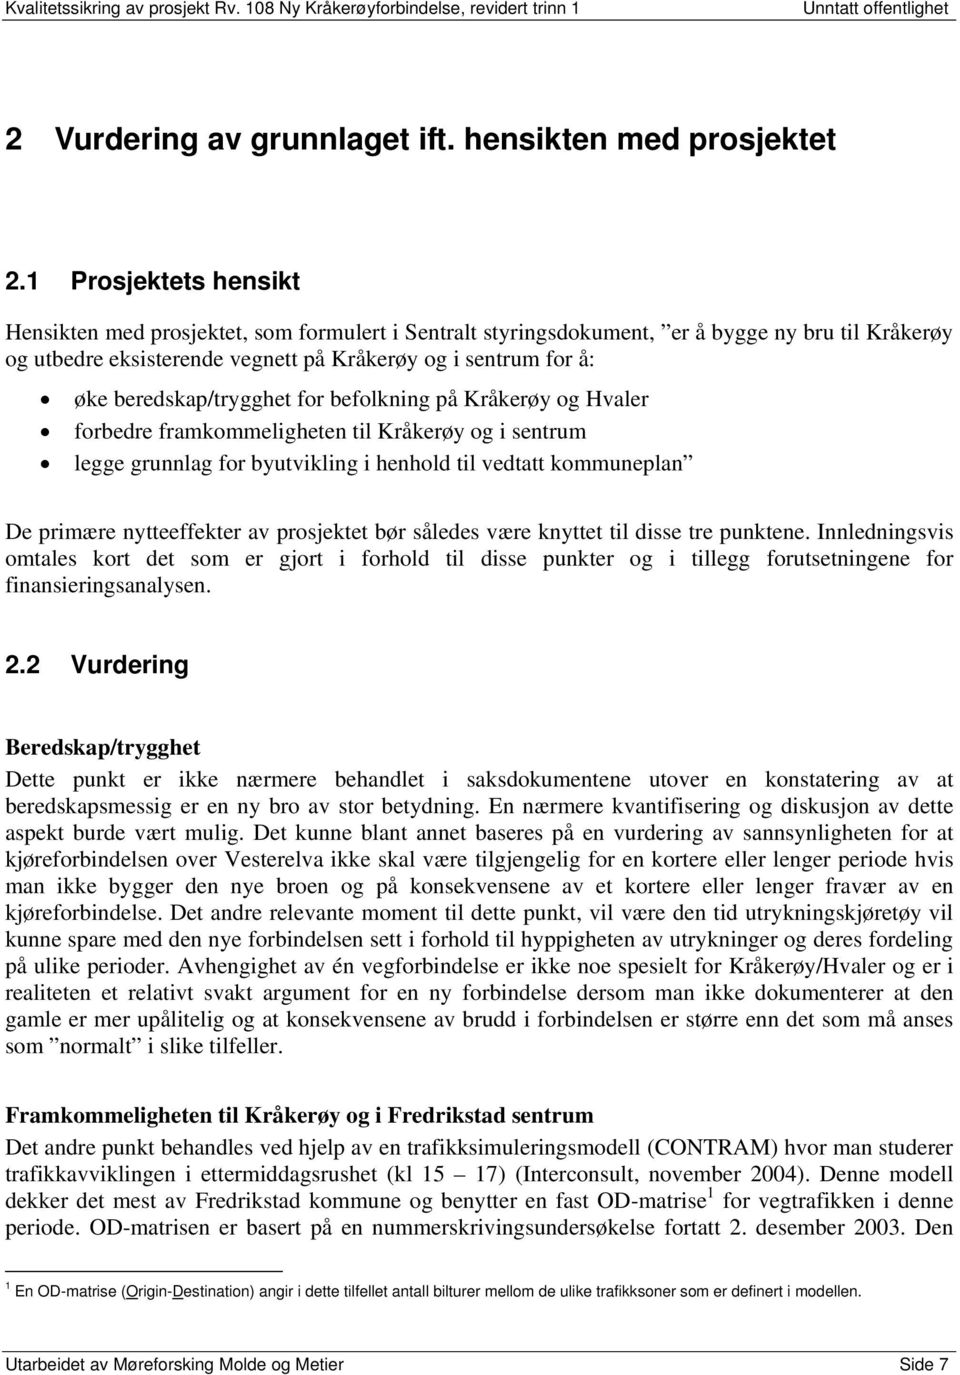 beredskap/trygghet for befolkning på Kråkerøy og Hvaler forbedre framkommeligheten til Kråkerøy og i sentrum legge grunnlag for byutvikling i henhold til vedtatt kommuneplan De primære nytteeffekter